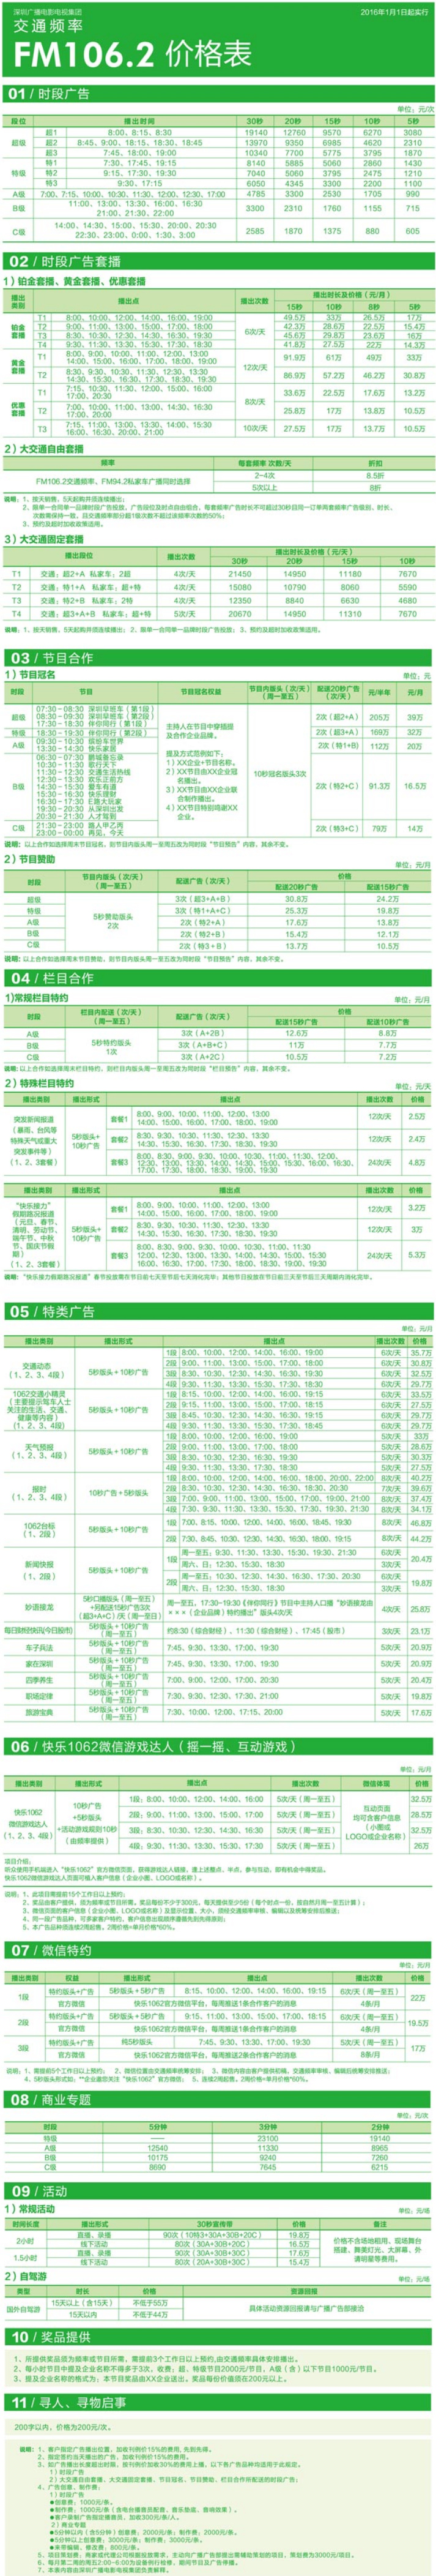 2016深圳人民广播电台交通频率 FM106.2广告报价表.jpg